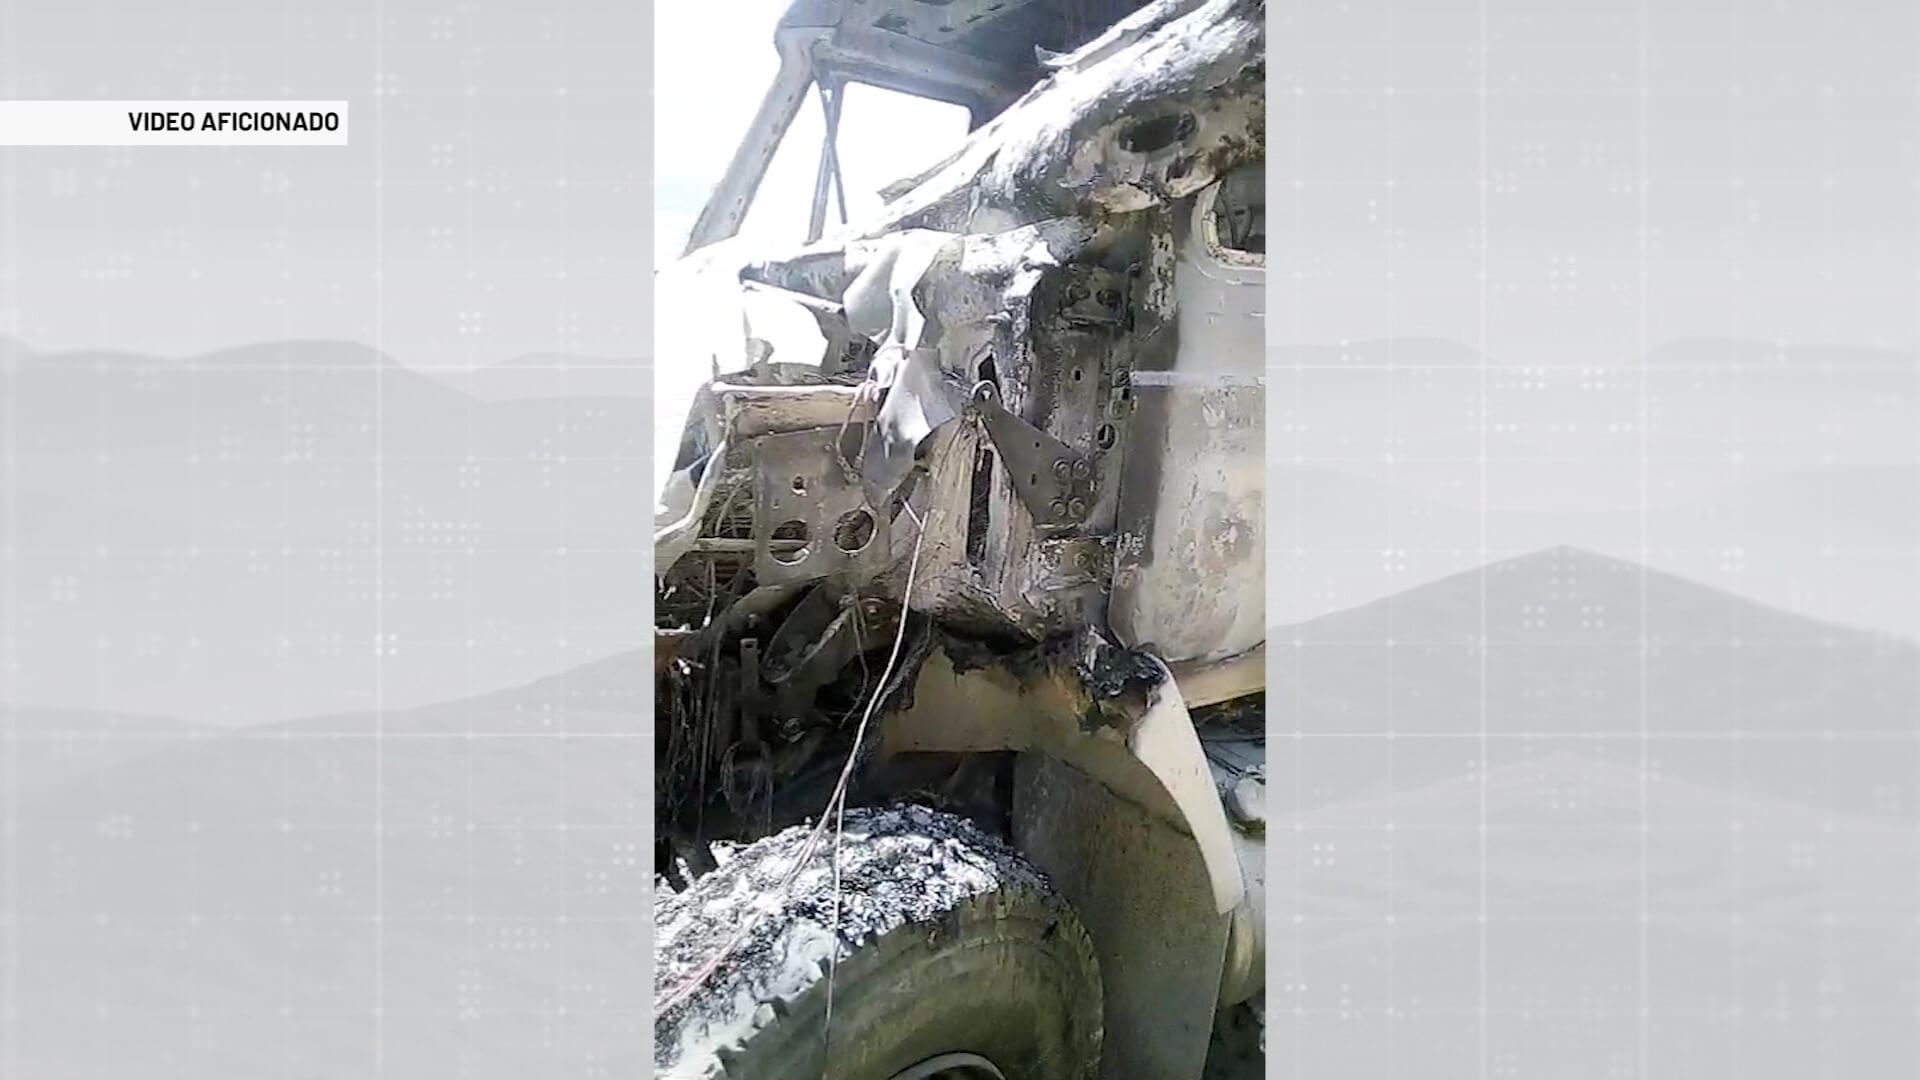 Le quemaron otro vehículo al mismo propietario en Yarumal